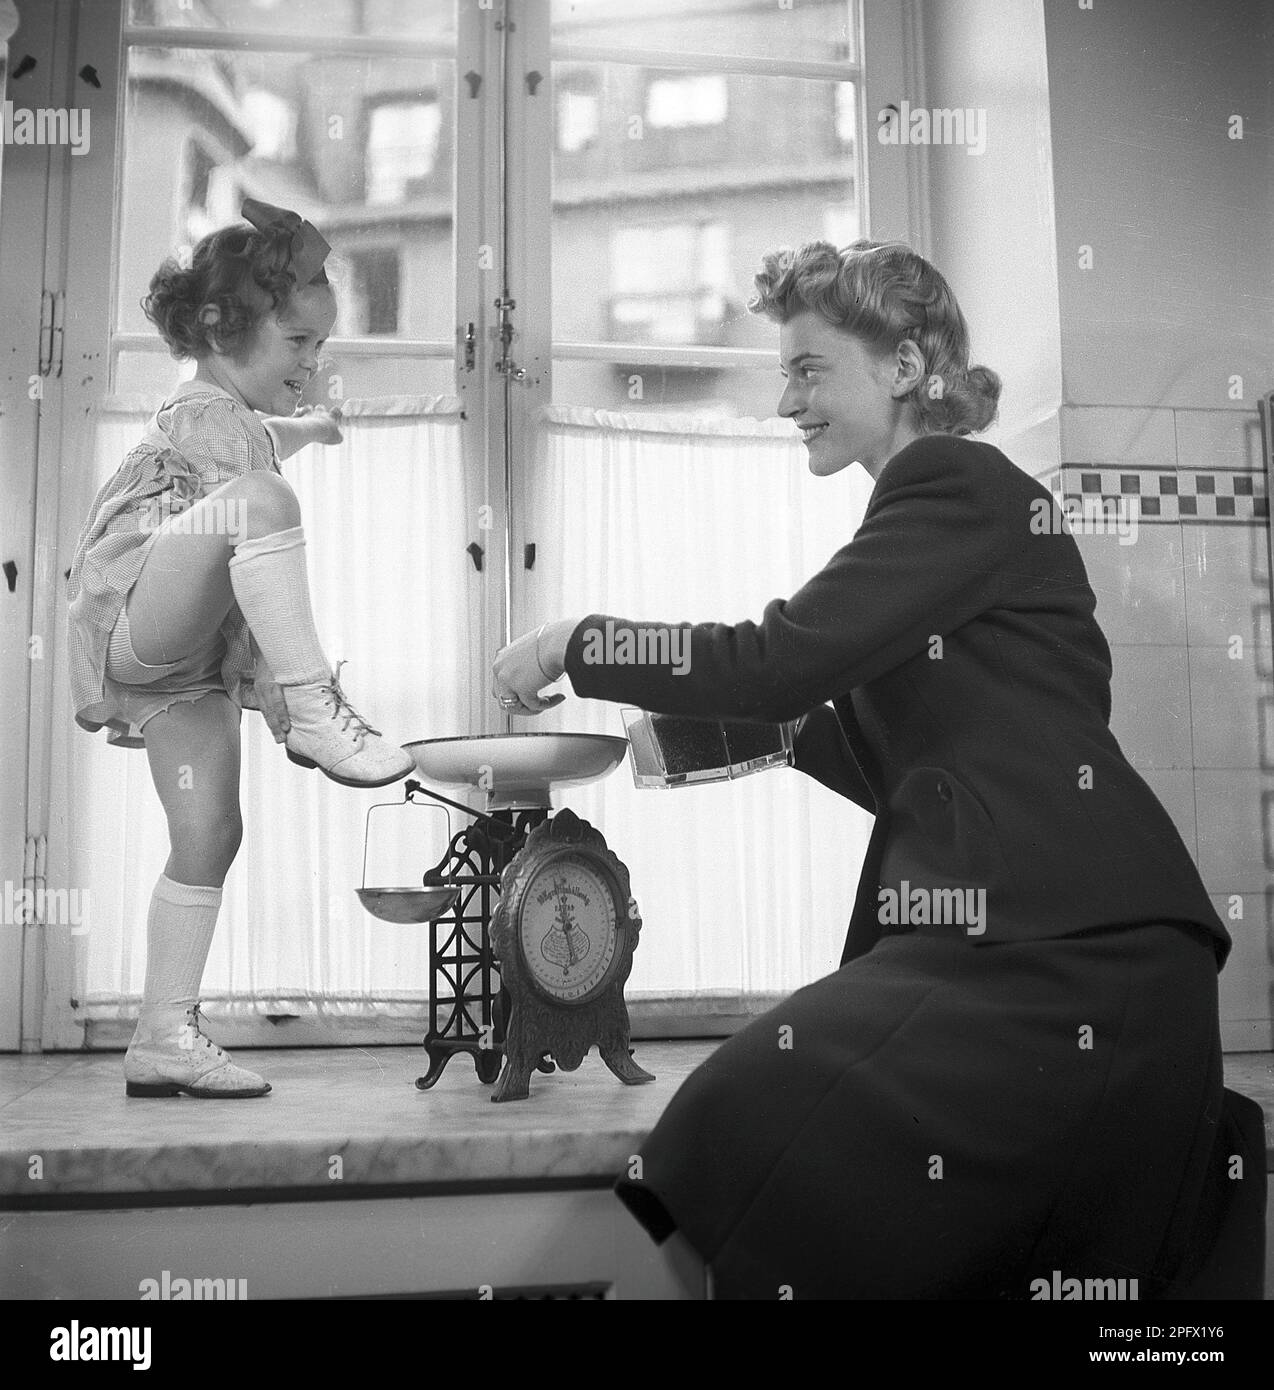 Scarpe negli anni '1940s. Una madre con la figlia accanto alla finestra. Mentre sta misurando qualcosa su una scala la ragazza mostra le sue scarpe. Svezia 1943 Kristoffersson Ref D57-4 Foto Stock